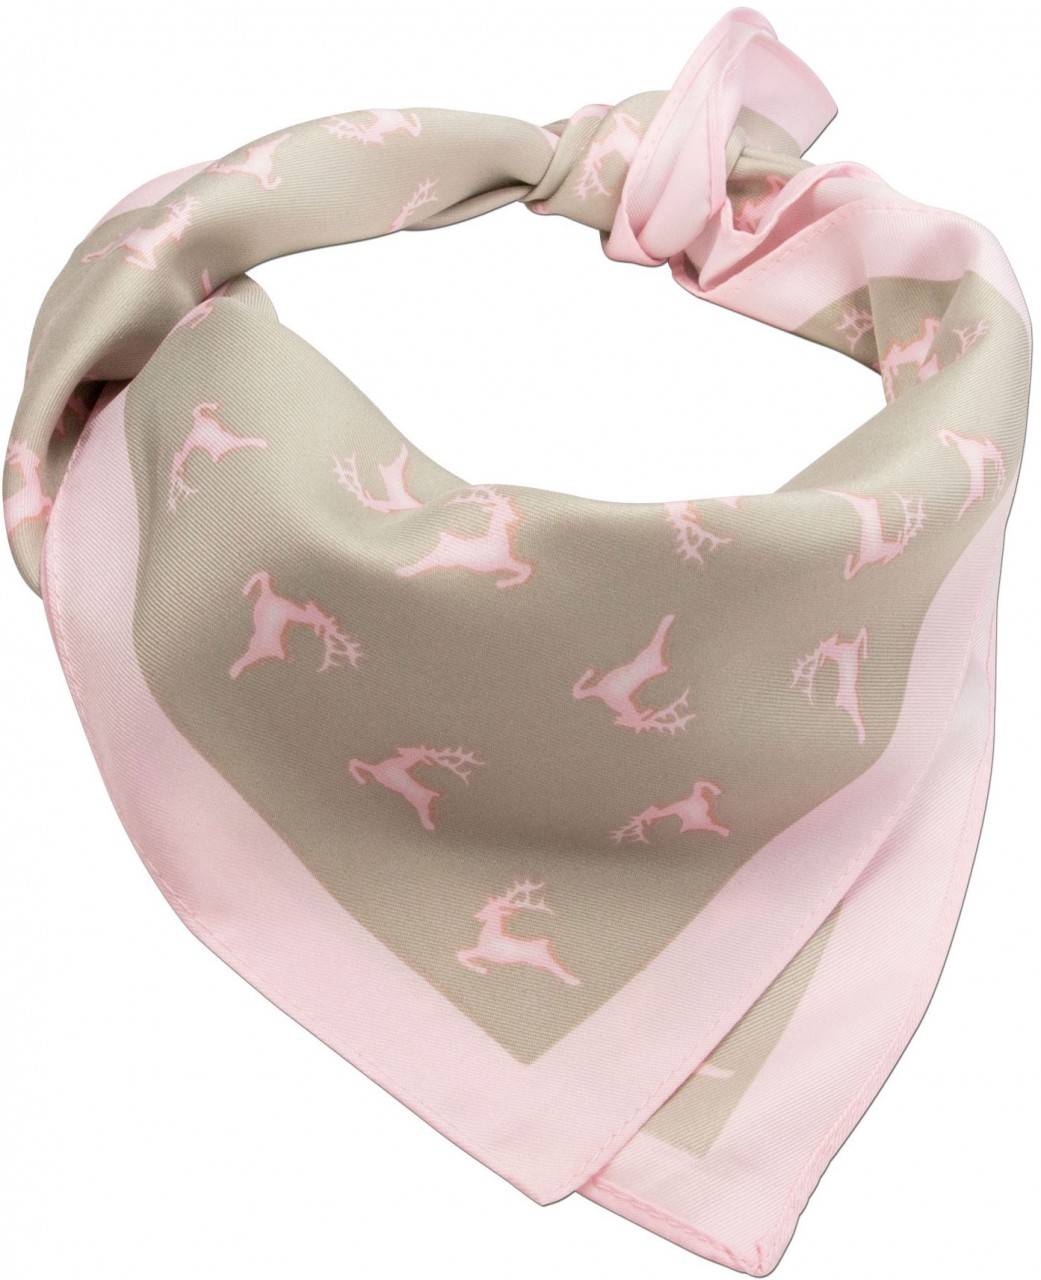 Aperçu: Foulard carré cerf en folie beige-rose pâle